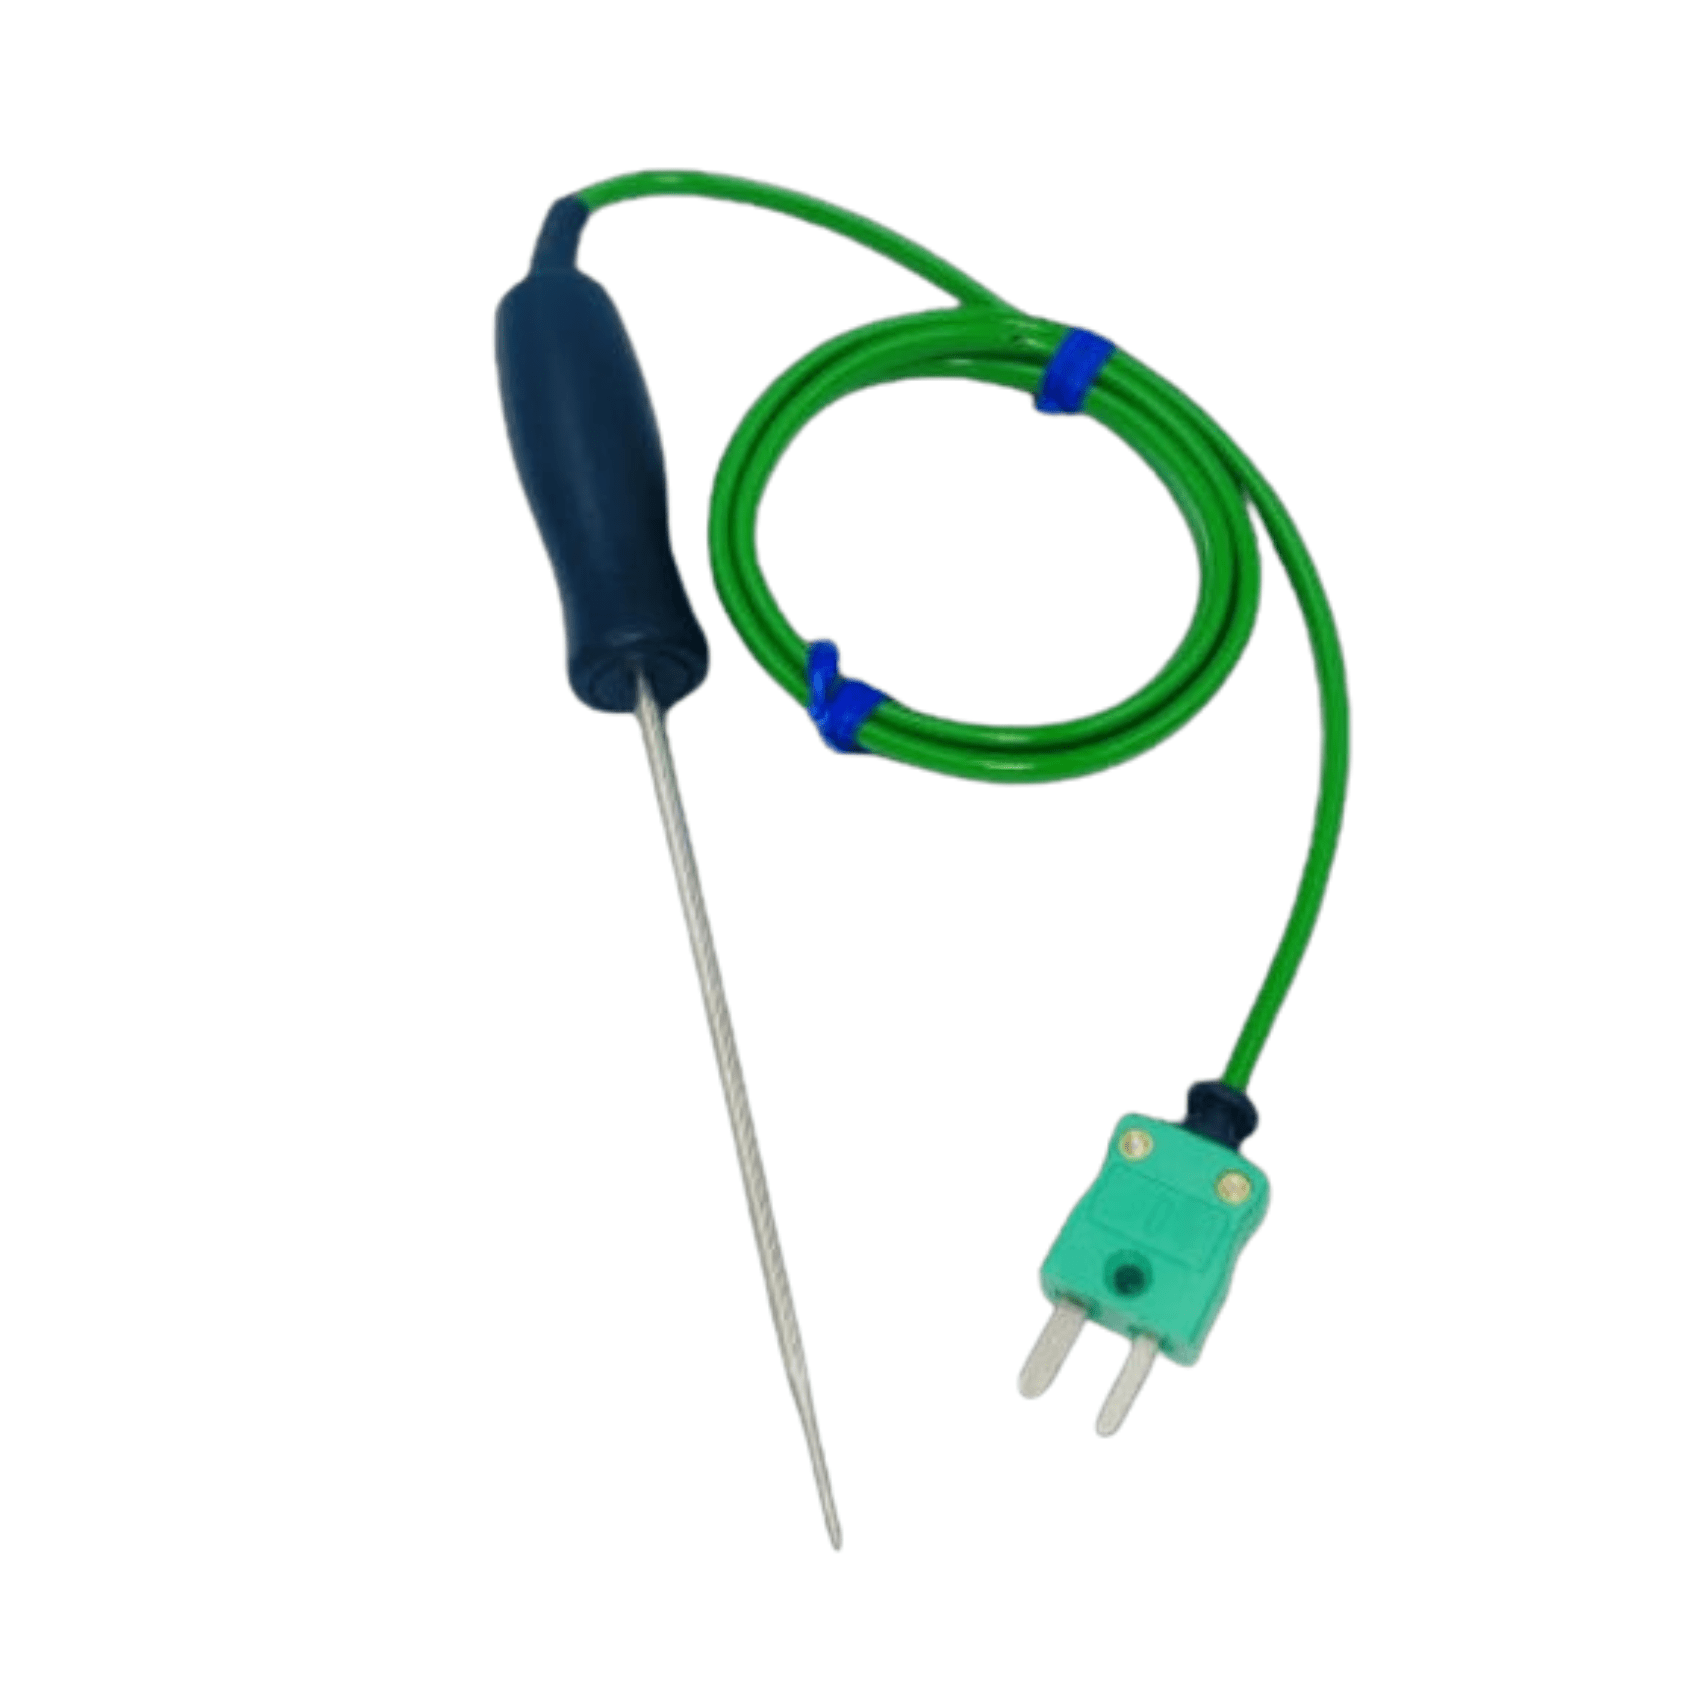 Un thermomètre miniature vert Sonde de pénétration à réponse rapide utilisé pour mesurer la température, avec un fil flexible attaché de Thermomètre.fr.